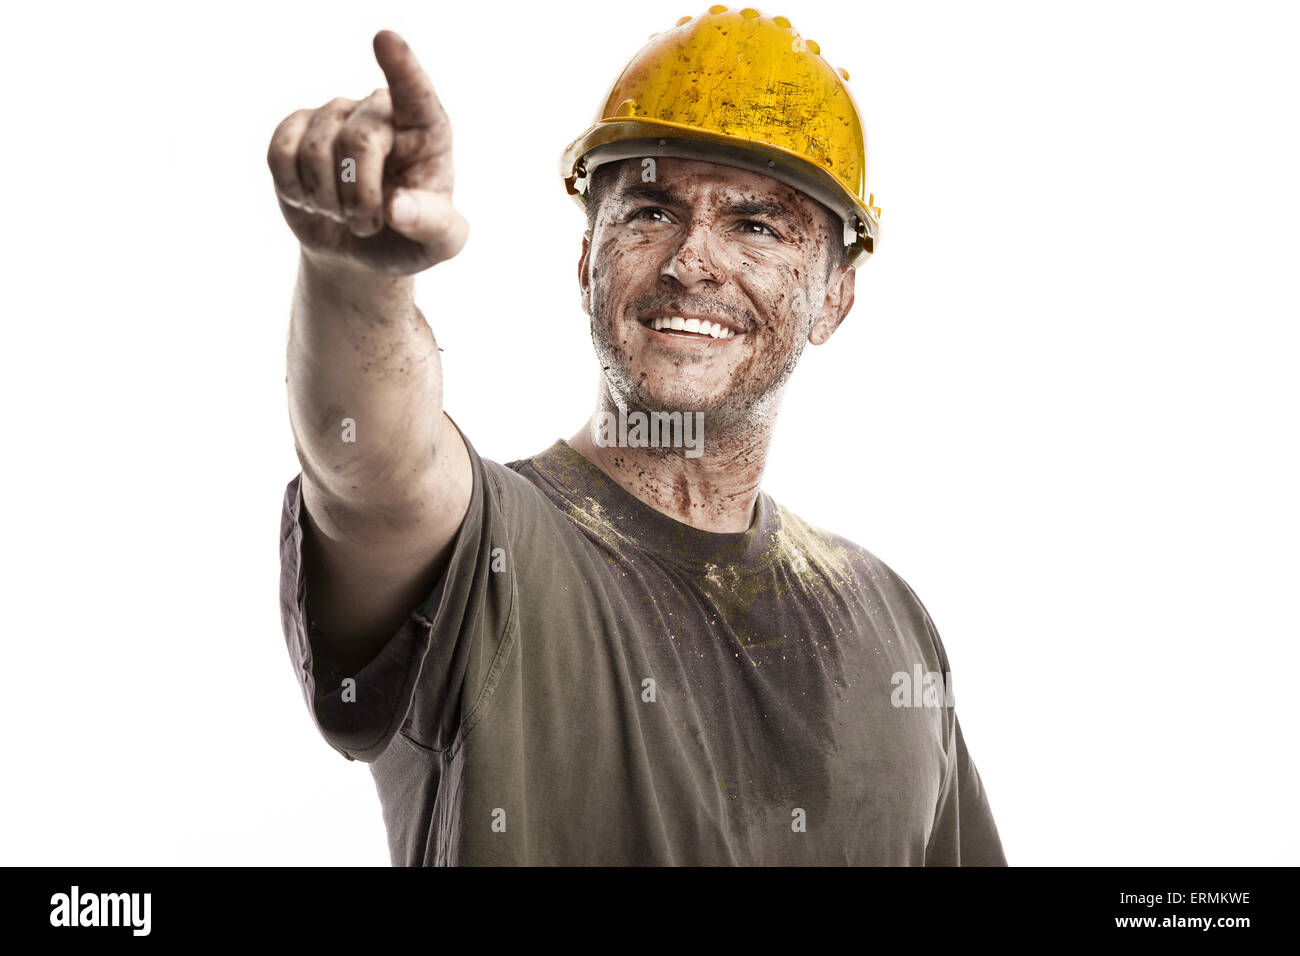 zeigen junge schmutziger Arbeiter Mann mit Schutzhelm Helm isoliert auf weißem Hintergrund Stockfoto